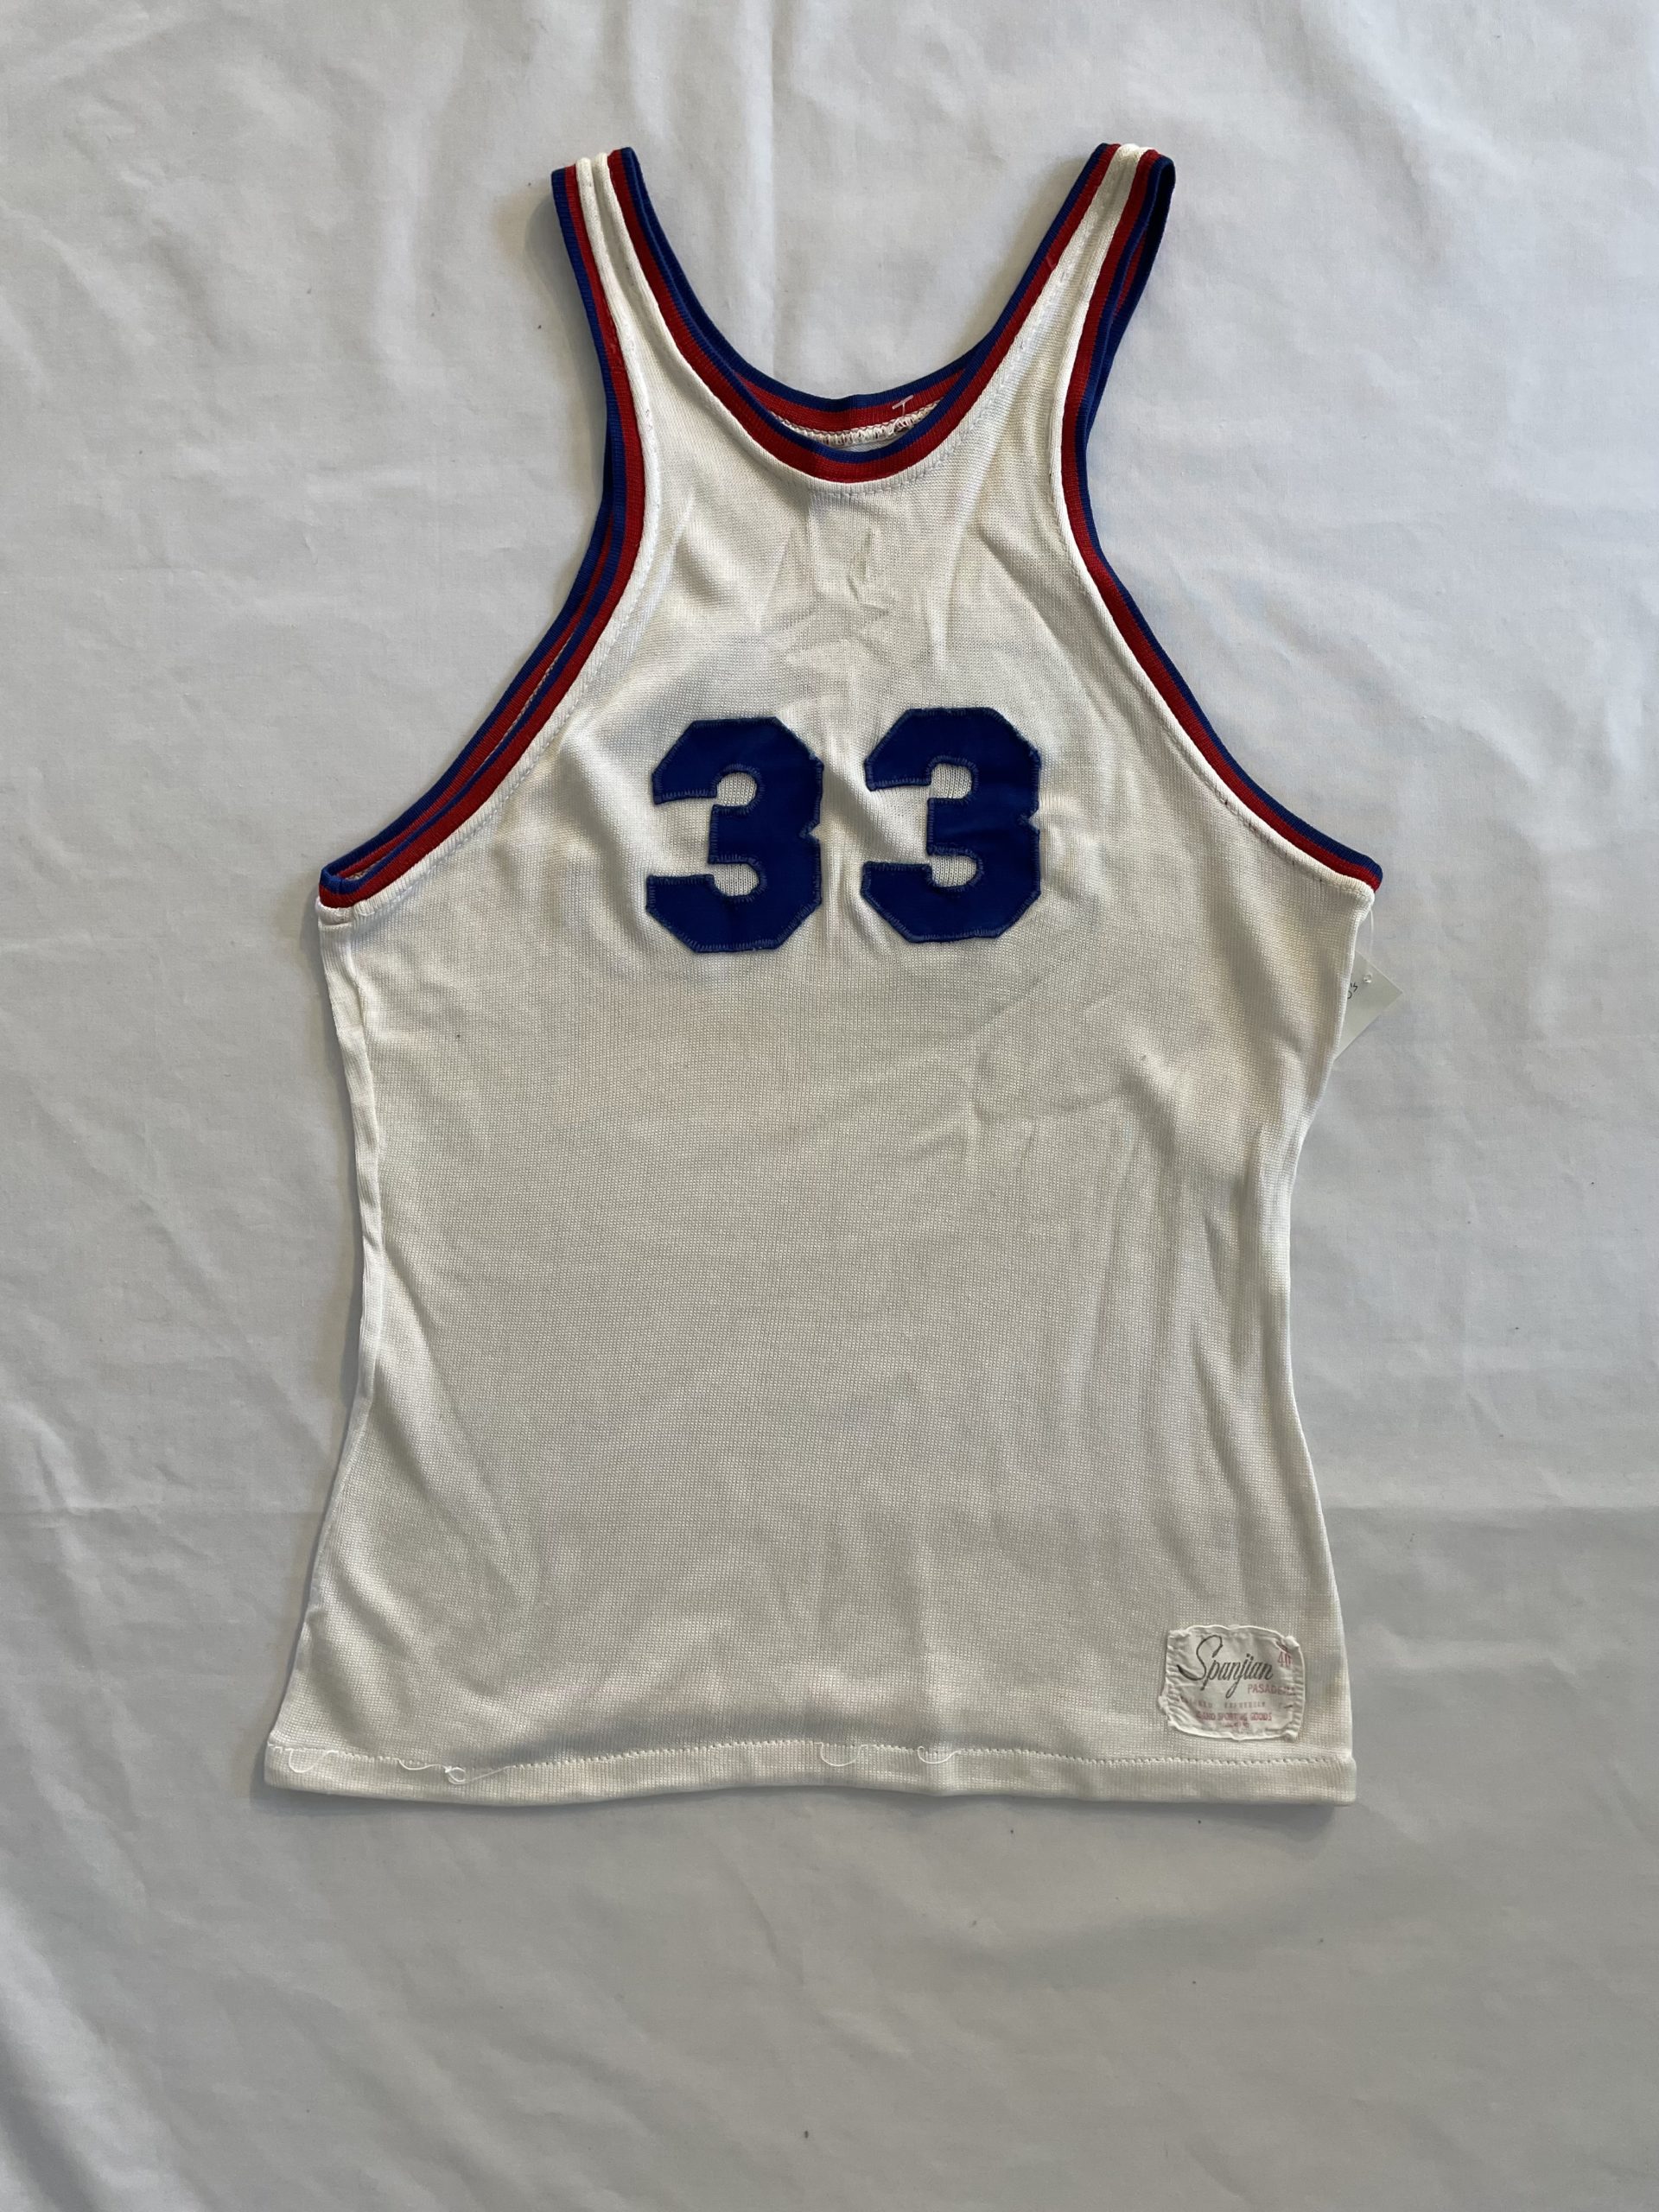 1950年代 バスケットボール ユニフォーム タンクトップ No.33 Spunjian Pasadena レーヨン 50’s